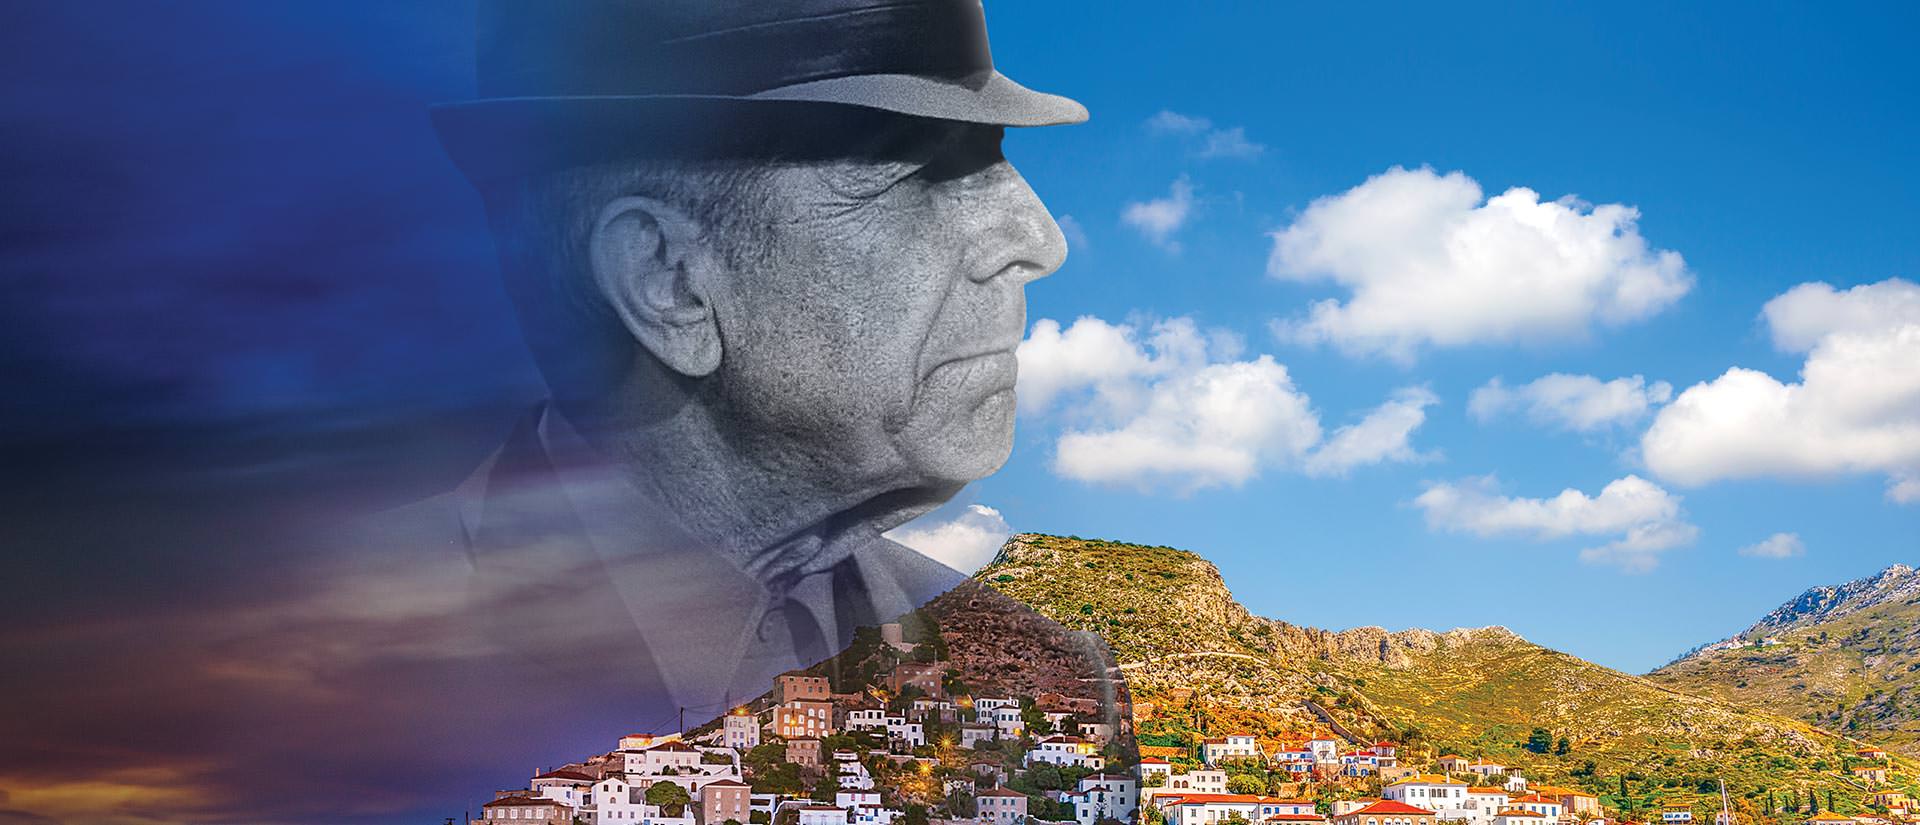 טיול ליוון - 4 ימים - סוף שבוע בעקבות לאונרד כהן באי הידרה